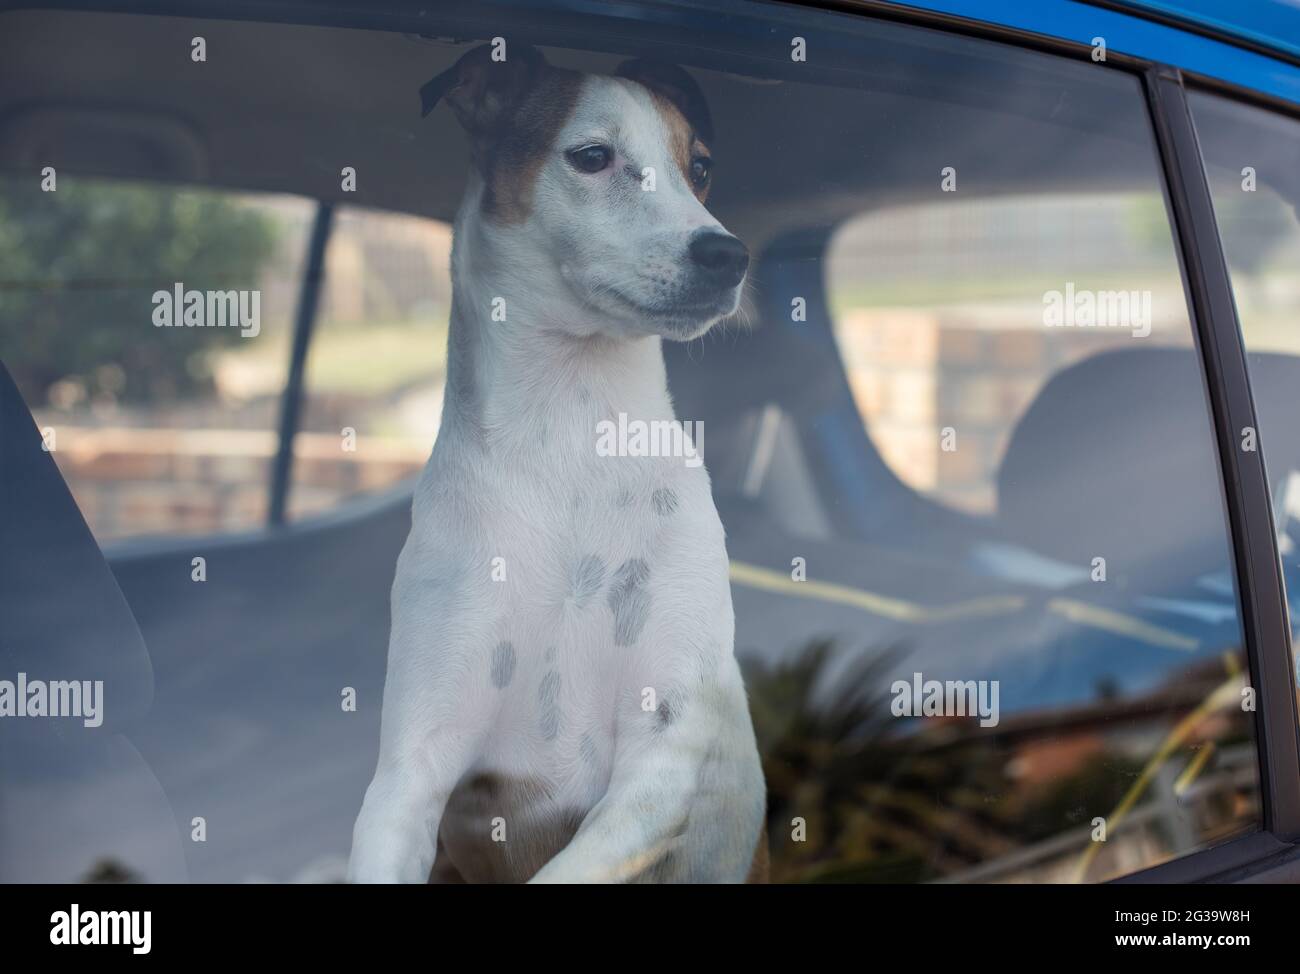 Cane bloccato all'interno del veicolo con finestrini chiusi Foto Stock